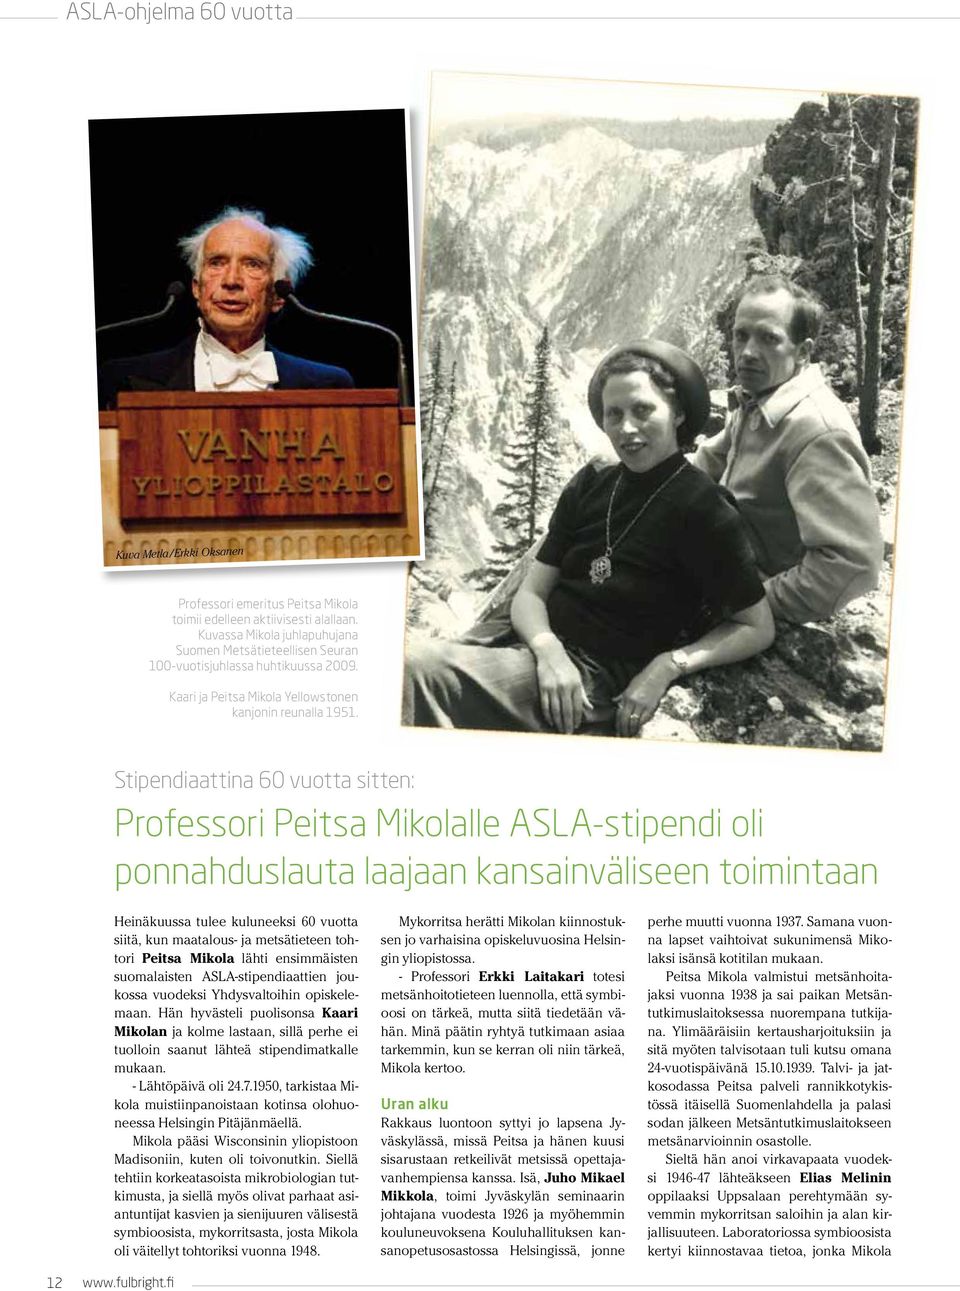 Stipendiaattina 60 vuotta sitten: Professori Peitsa Mikolalle ASLA-stipendi oli ponnahduslauta laajaan kansainväliseen toimintaan 12 www.fulbright.